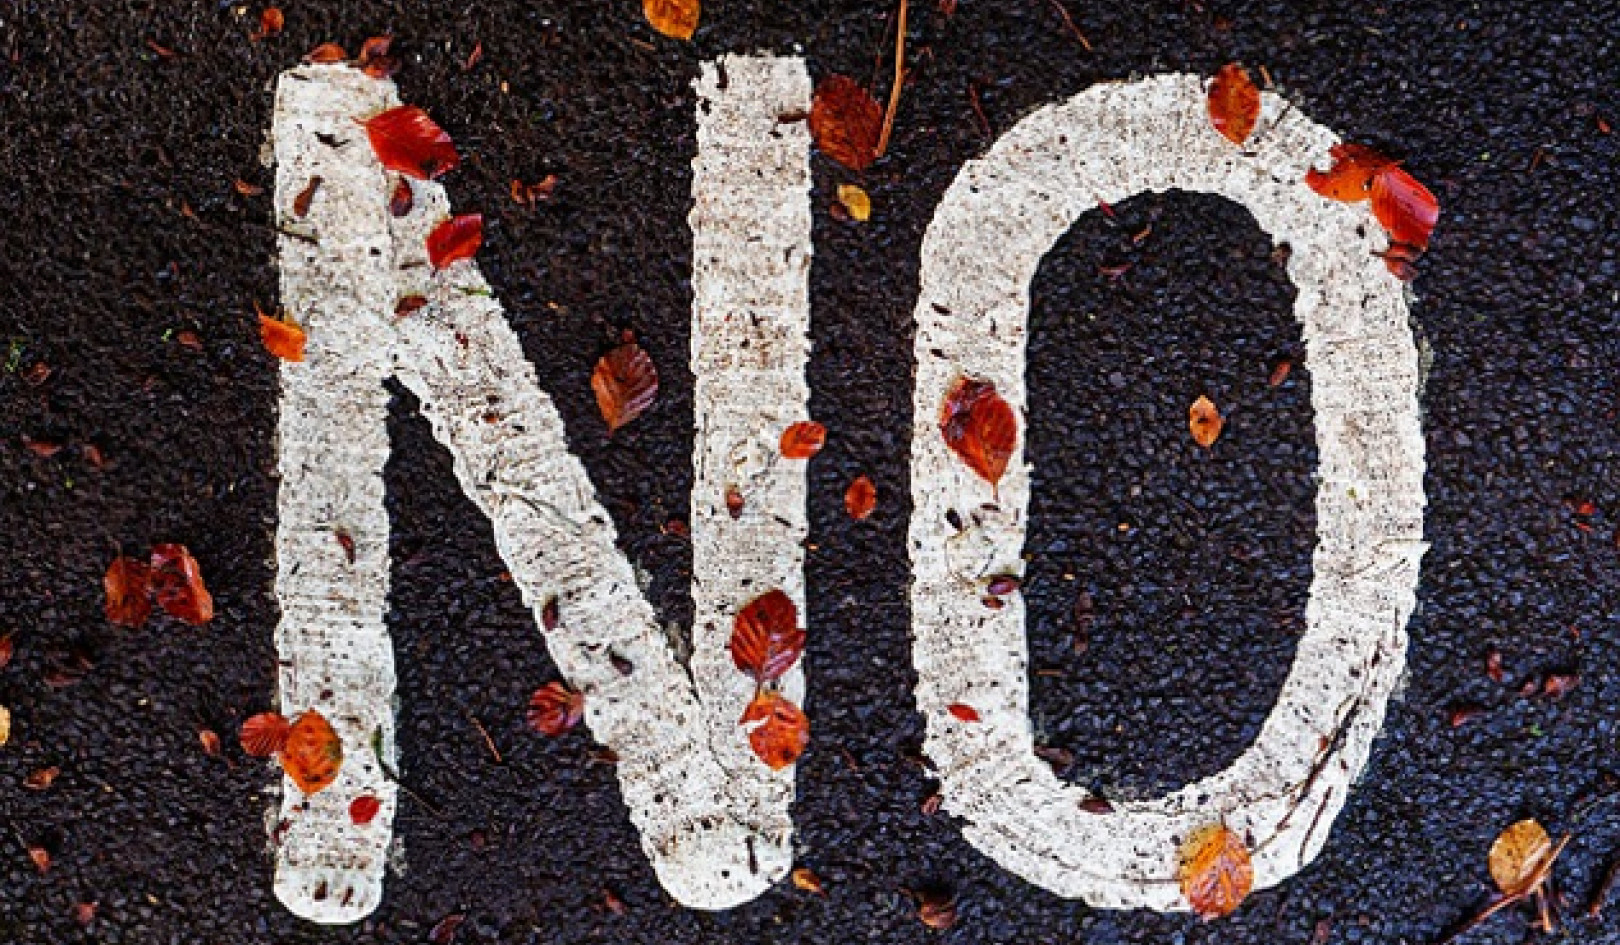 Le nostre paure di dire "no" sono esagerate?